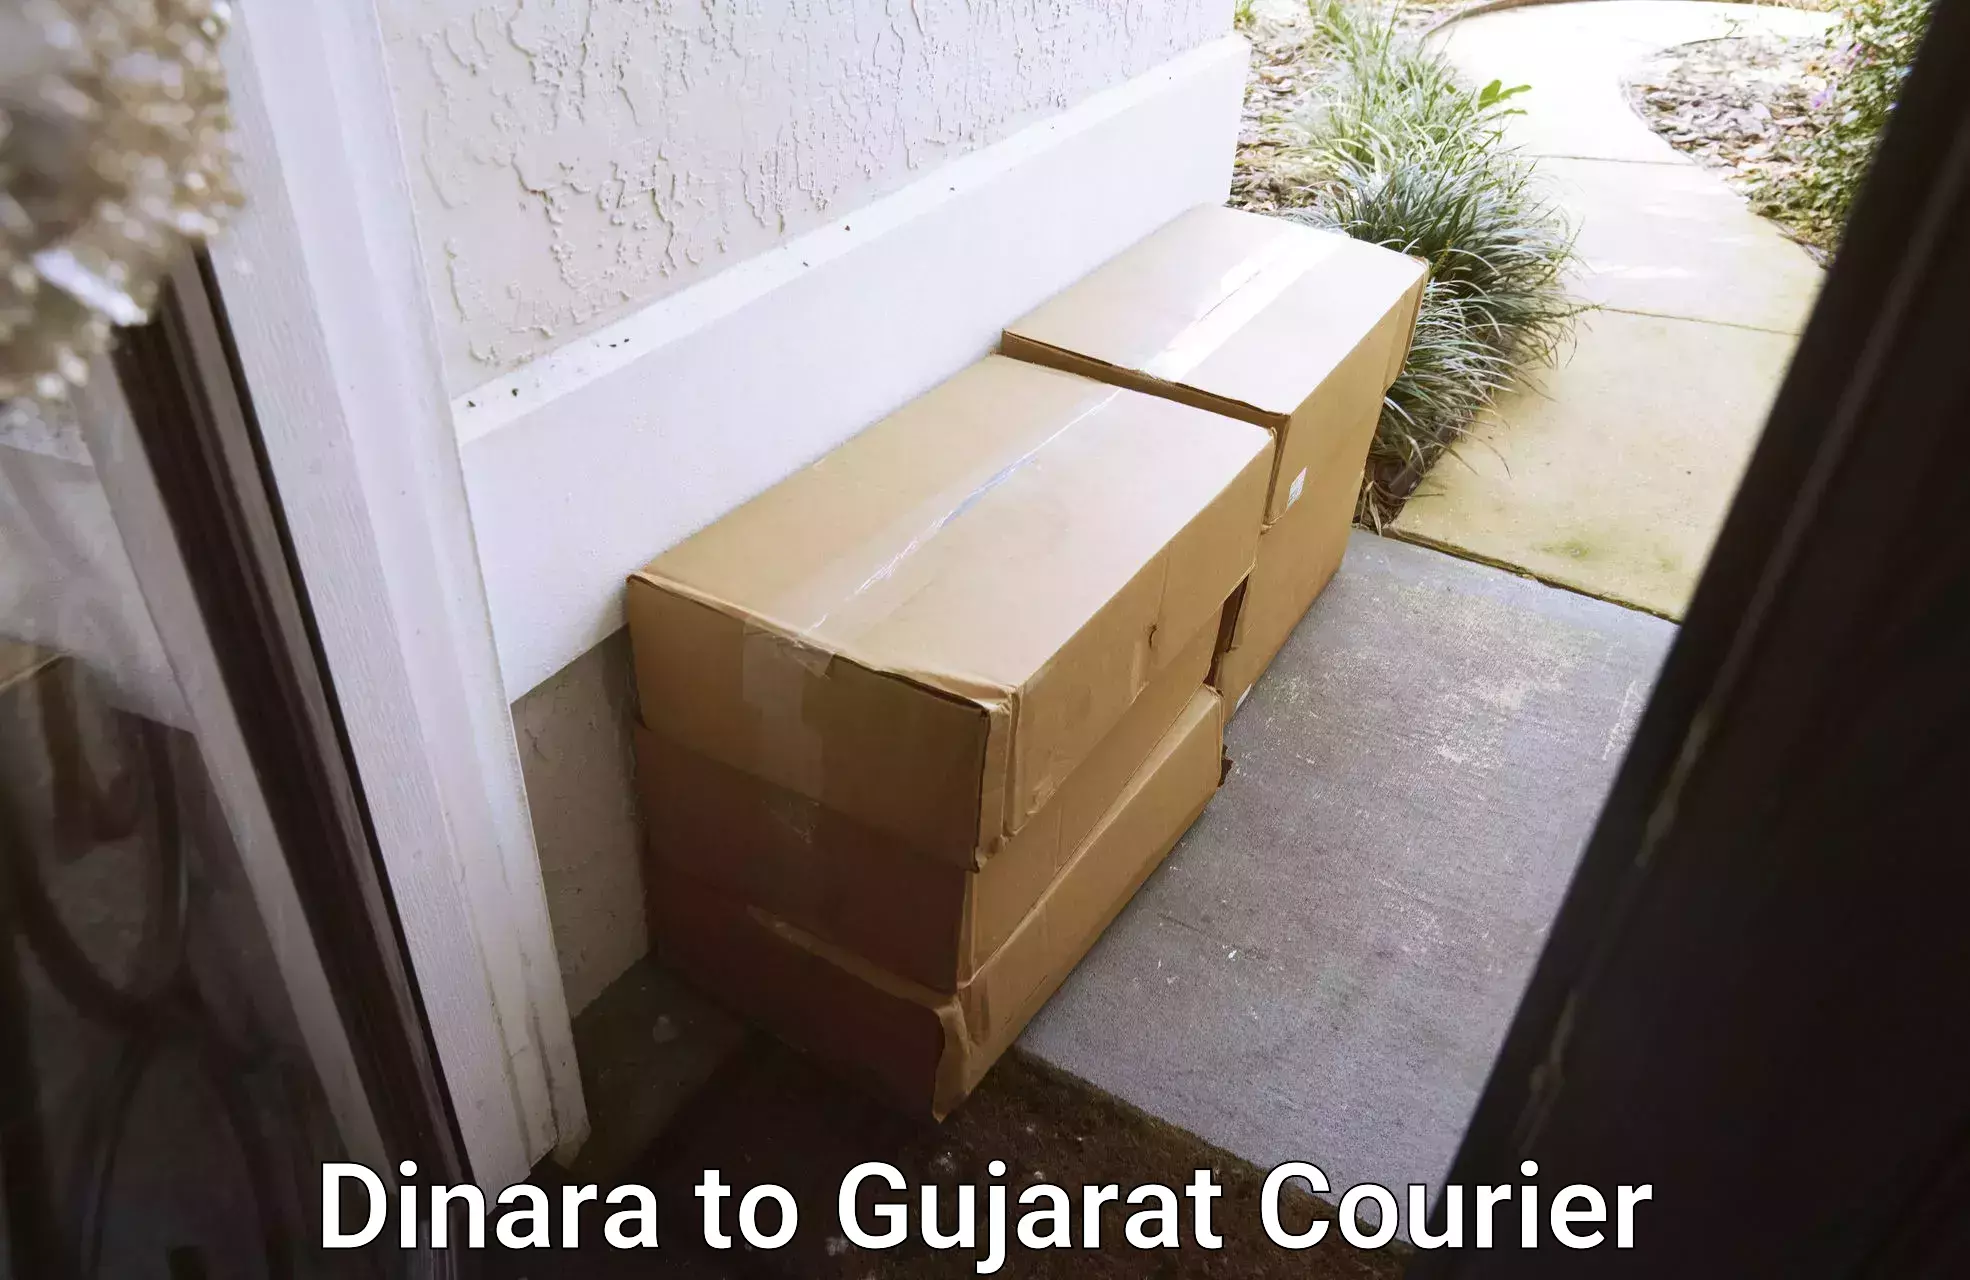 Furniture transport service Dinara to Patan Gujarat